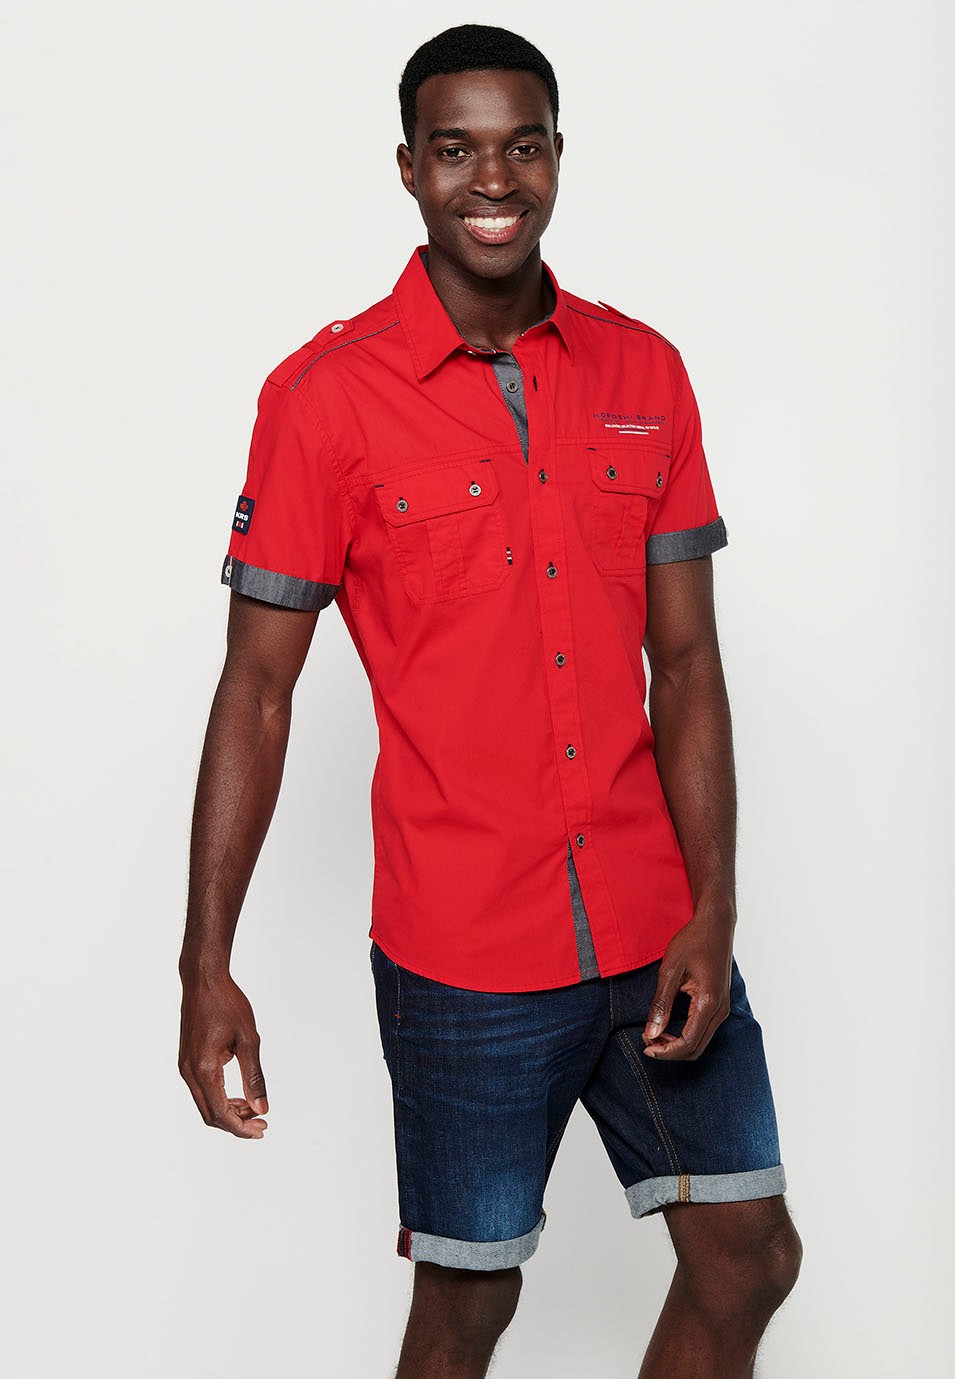 Baumwollhemd, kurze Ärmel, Schulterdetails, rote Farbe für Herren